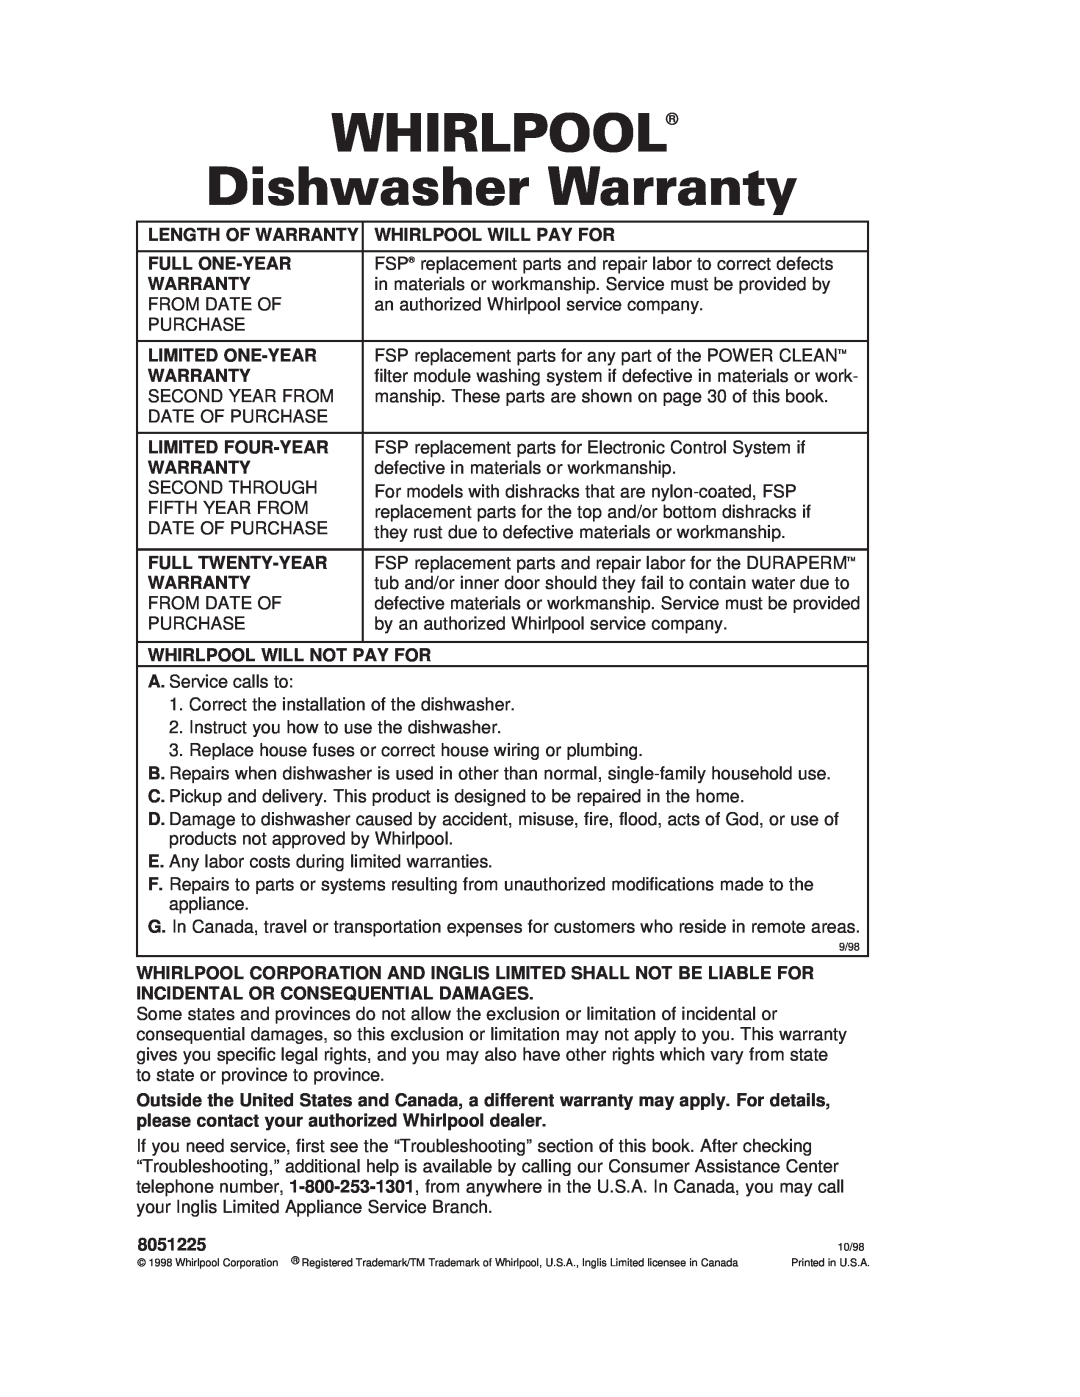 Whirlpool 980 warranty WHIRLPOOL Dishwasher Warranty 